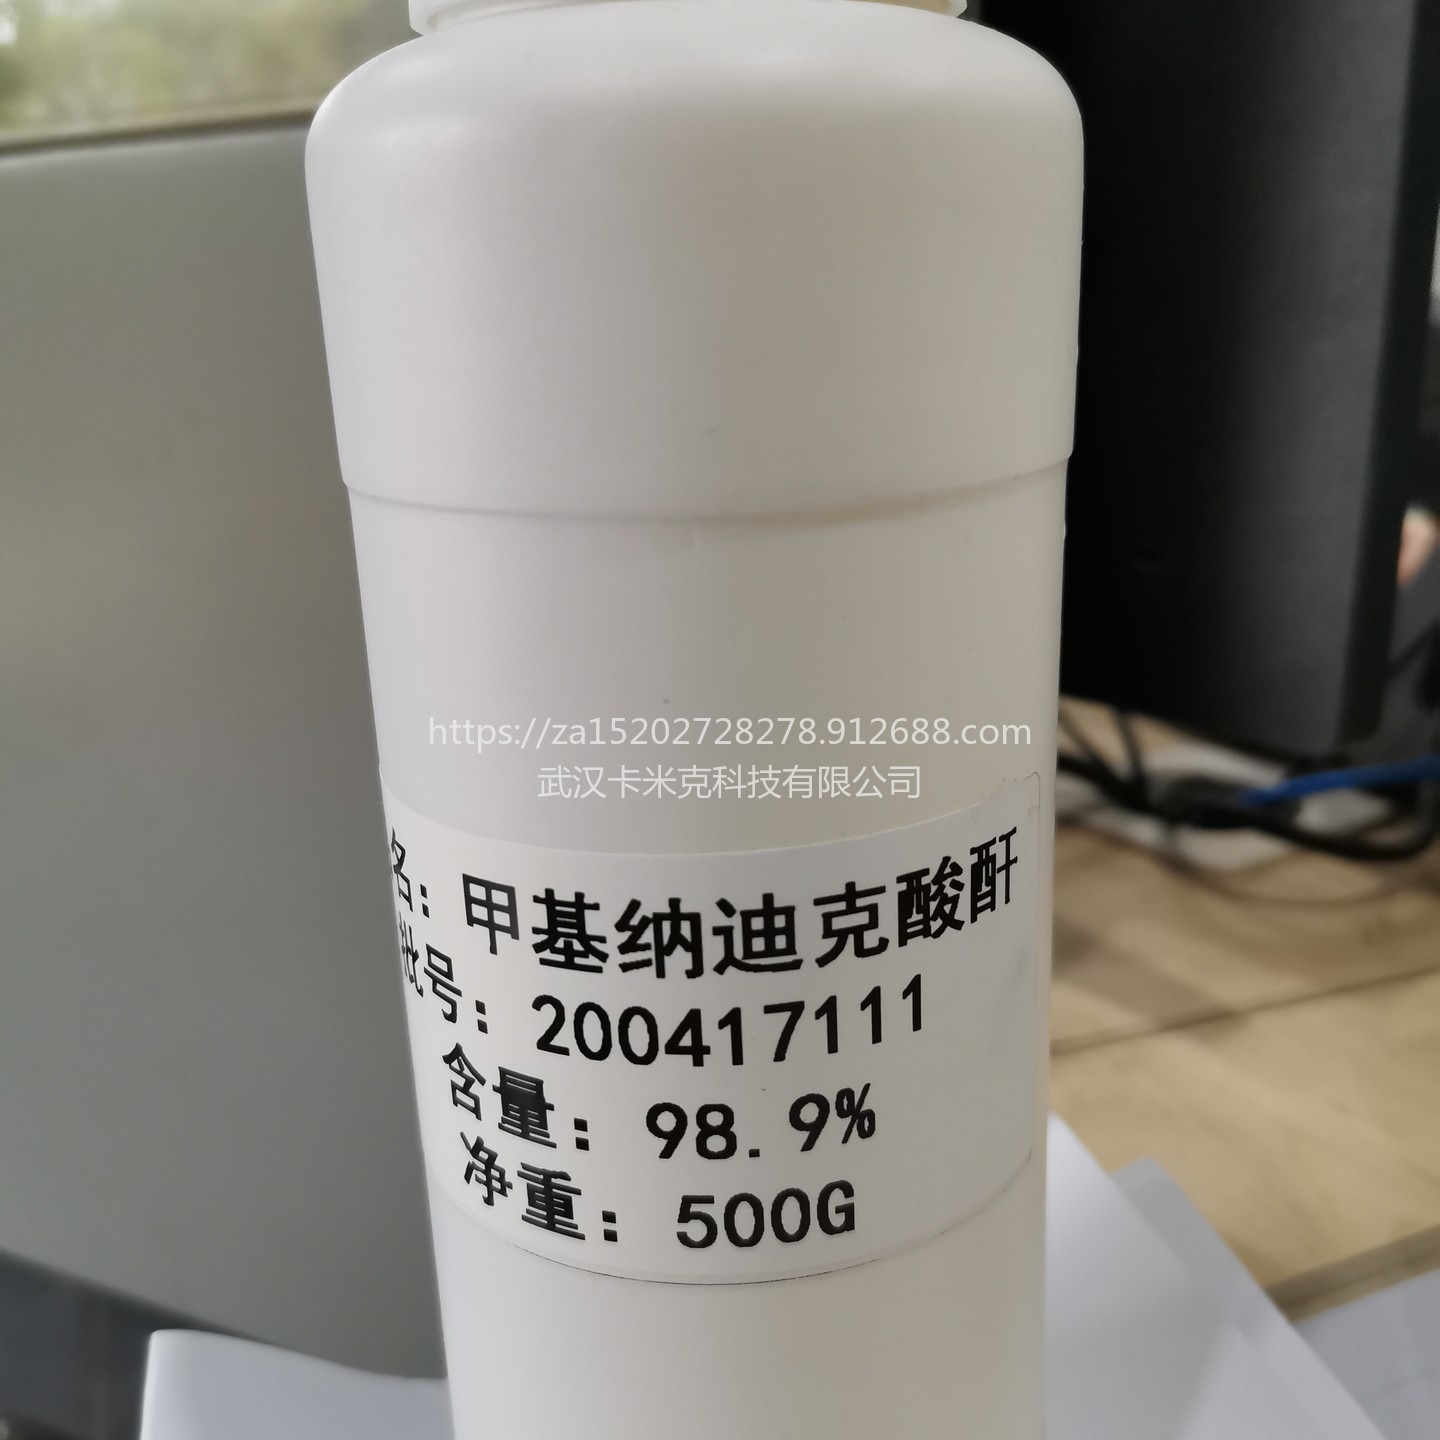 甲基纳迪克酸酐 原料 99% 25134-21-8 厂家 价格 现货kmk 固化剂 25KG/塑料桶图片